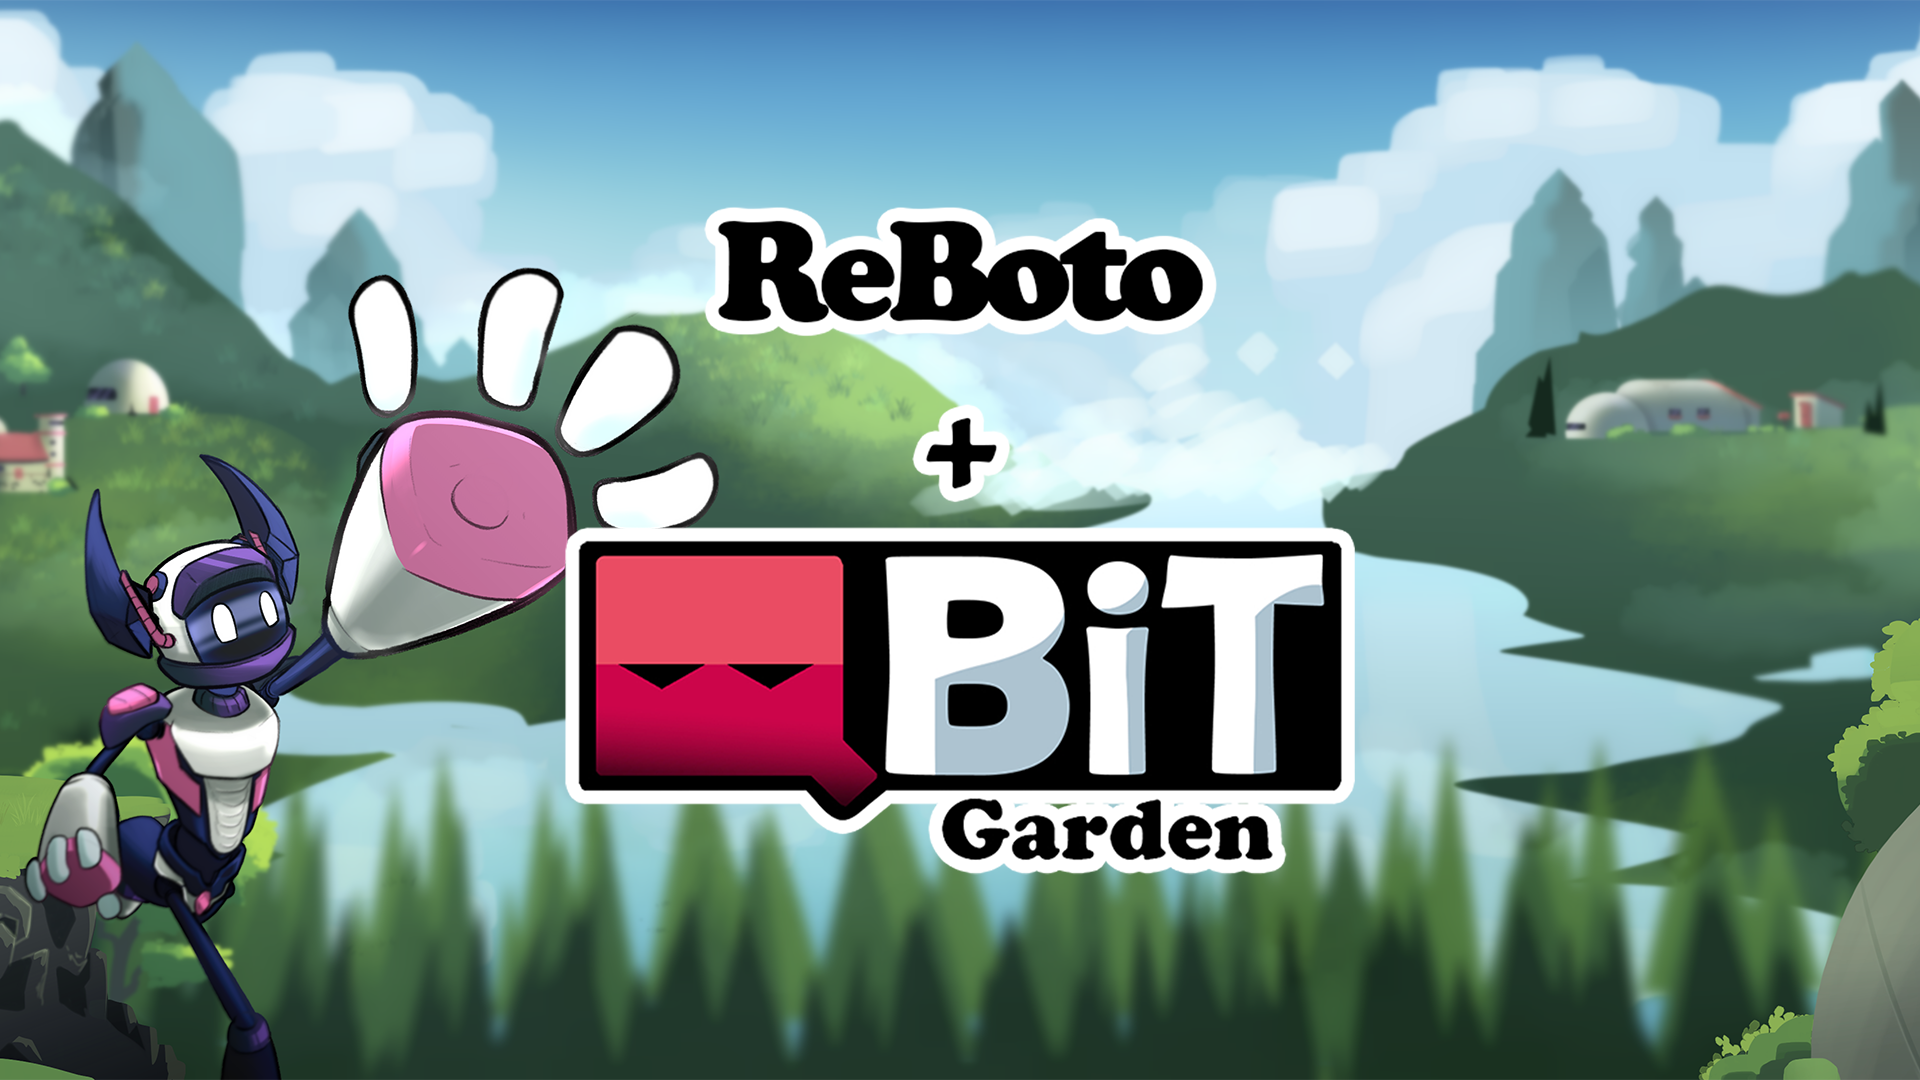 ReBoto + QBit Garden